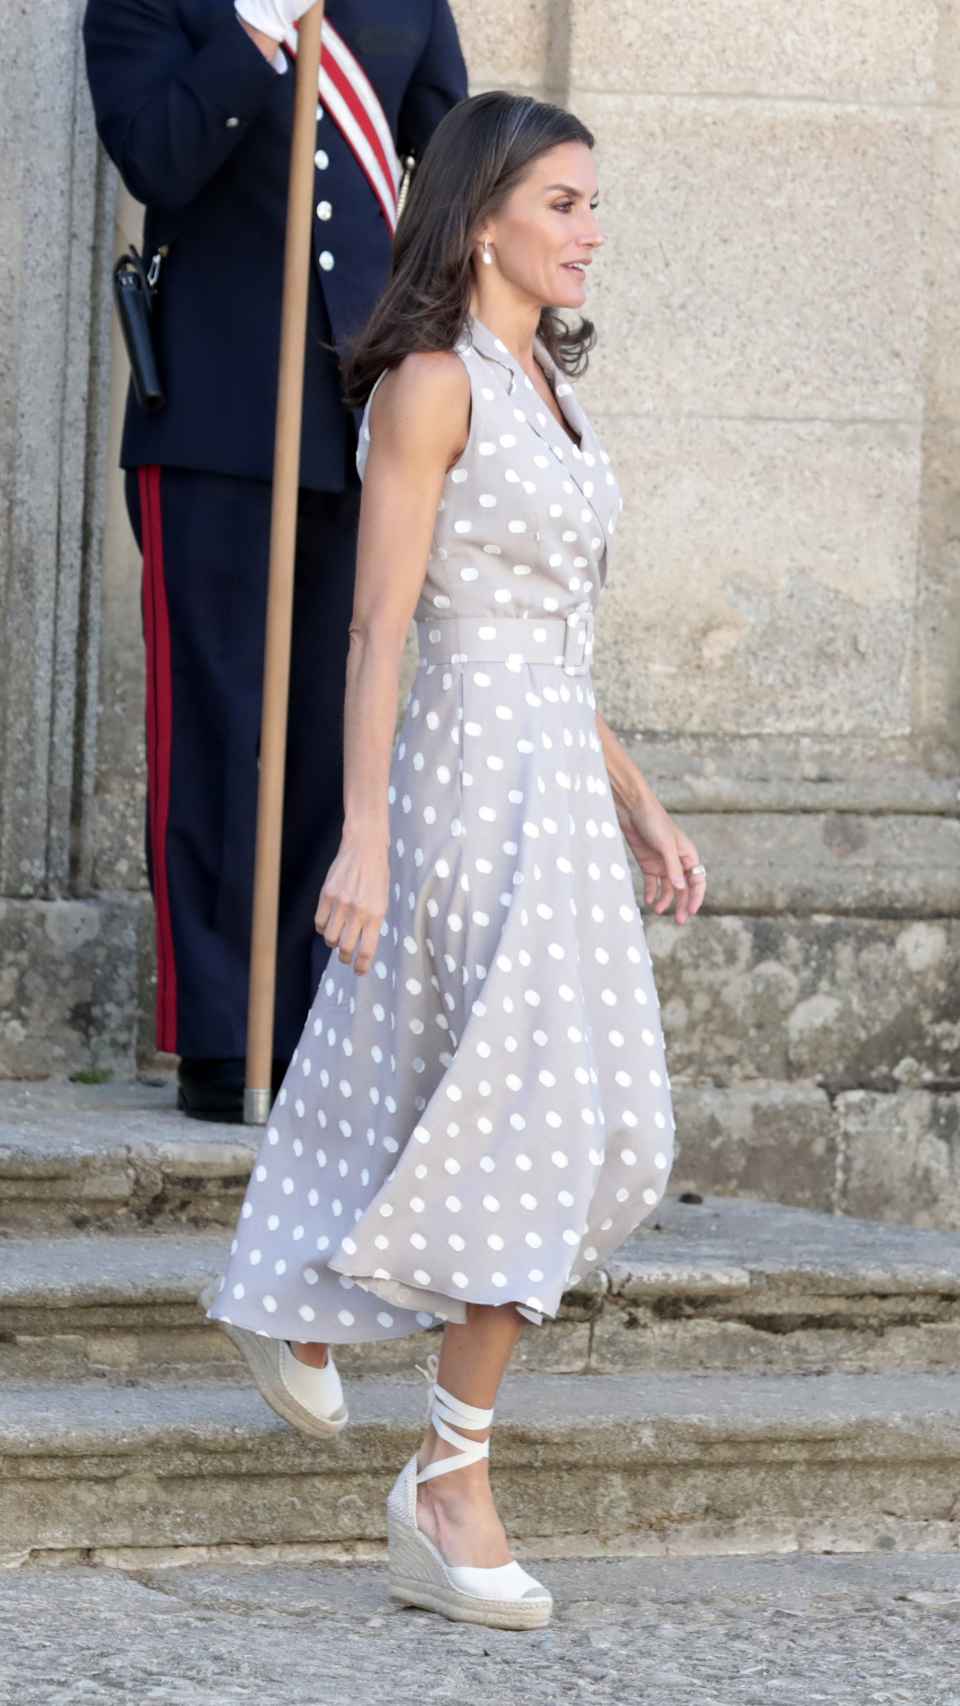 Queen Letizia has worn a dress by the firm Laura Bernal.